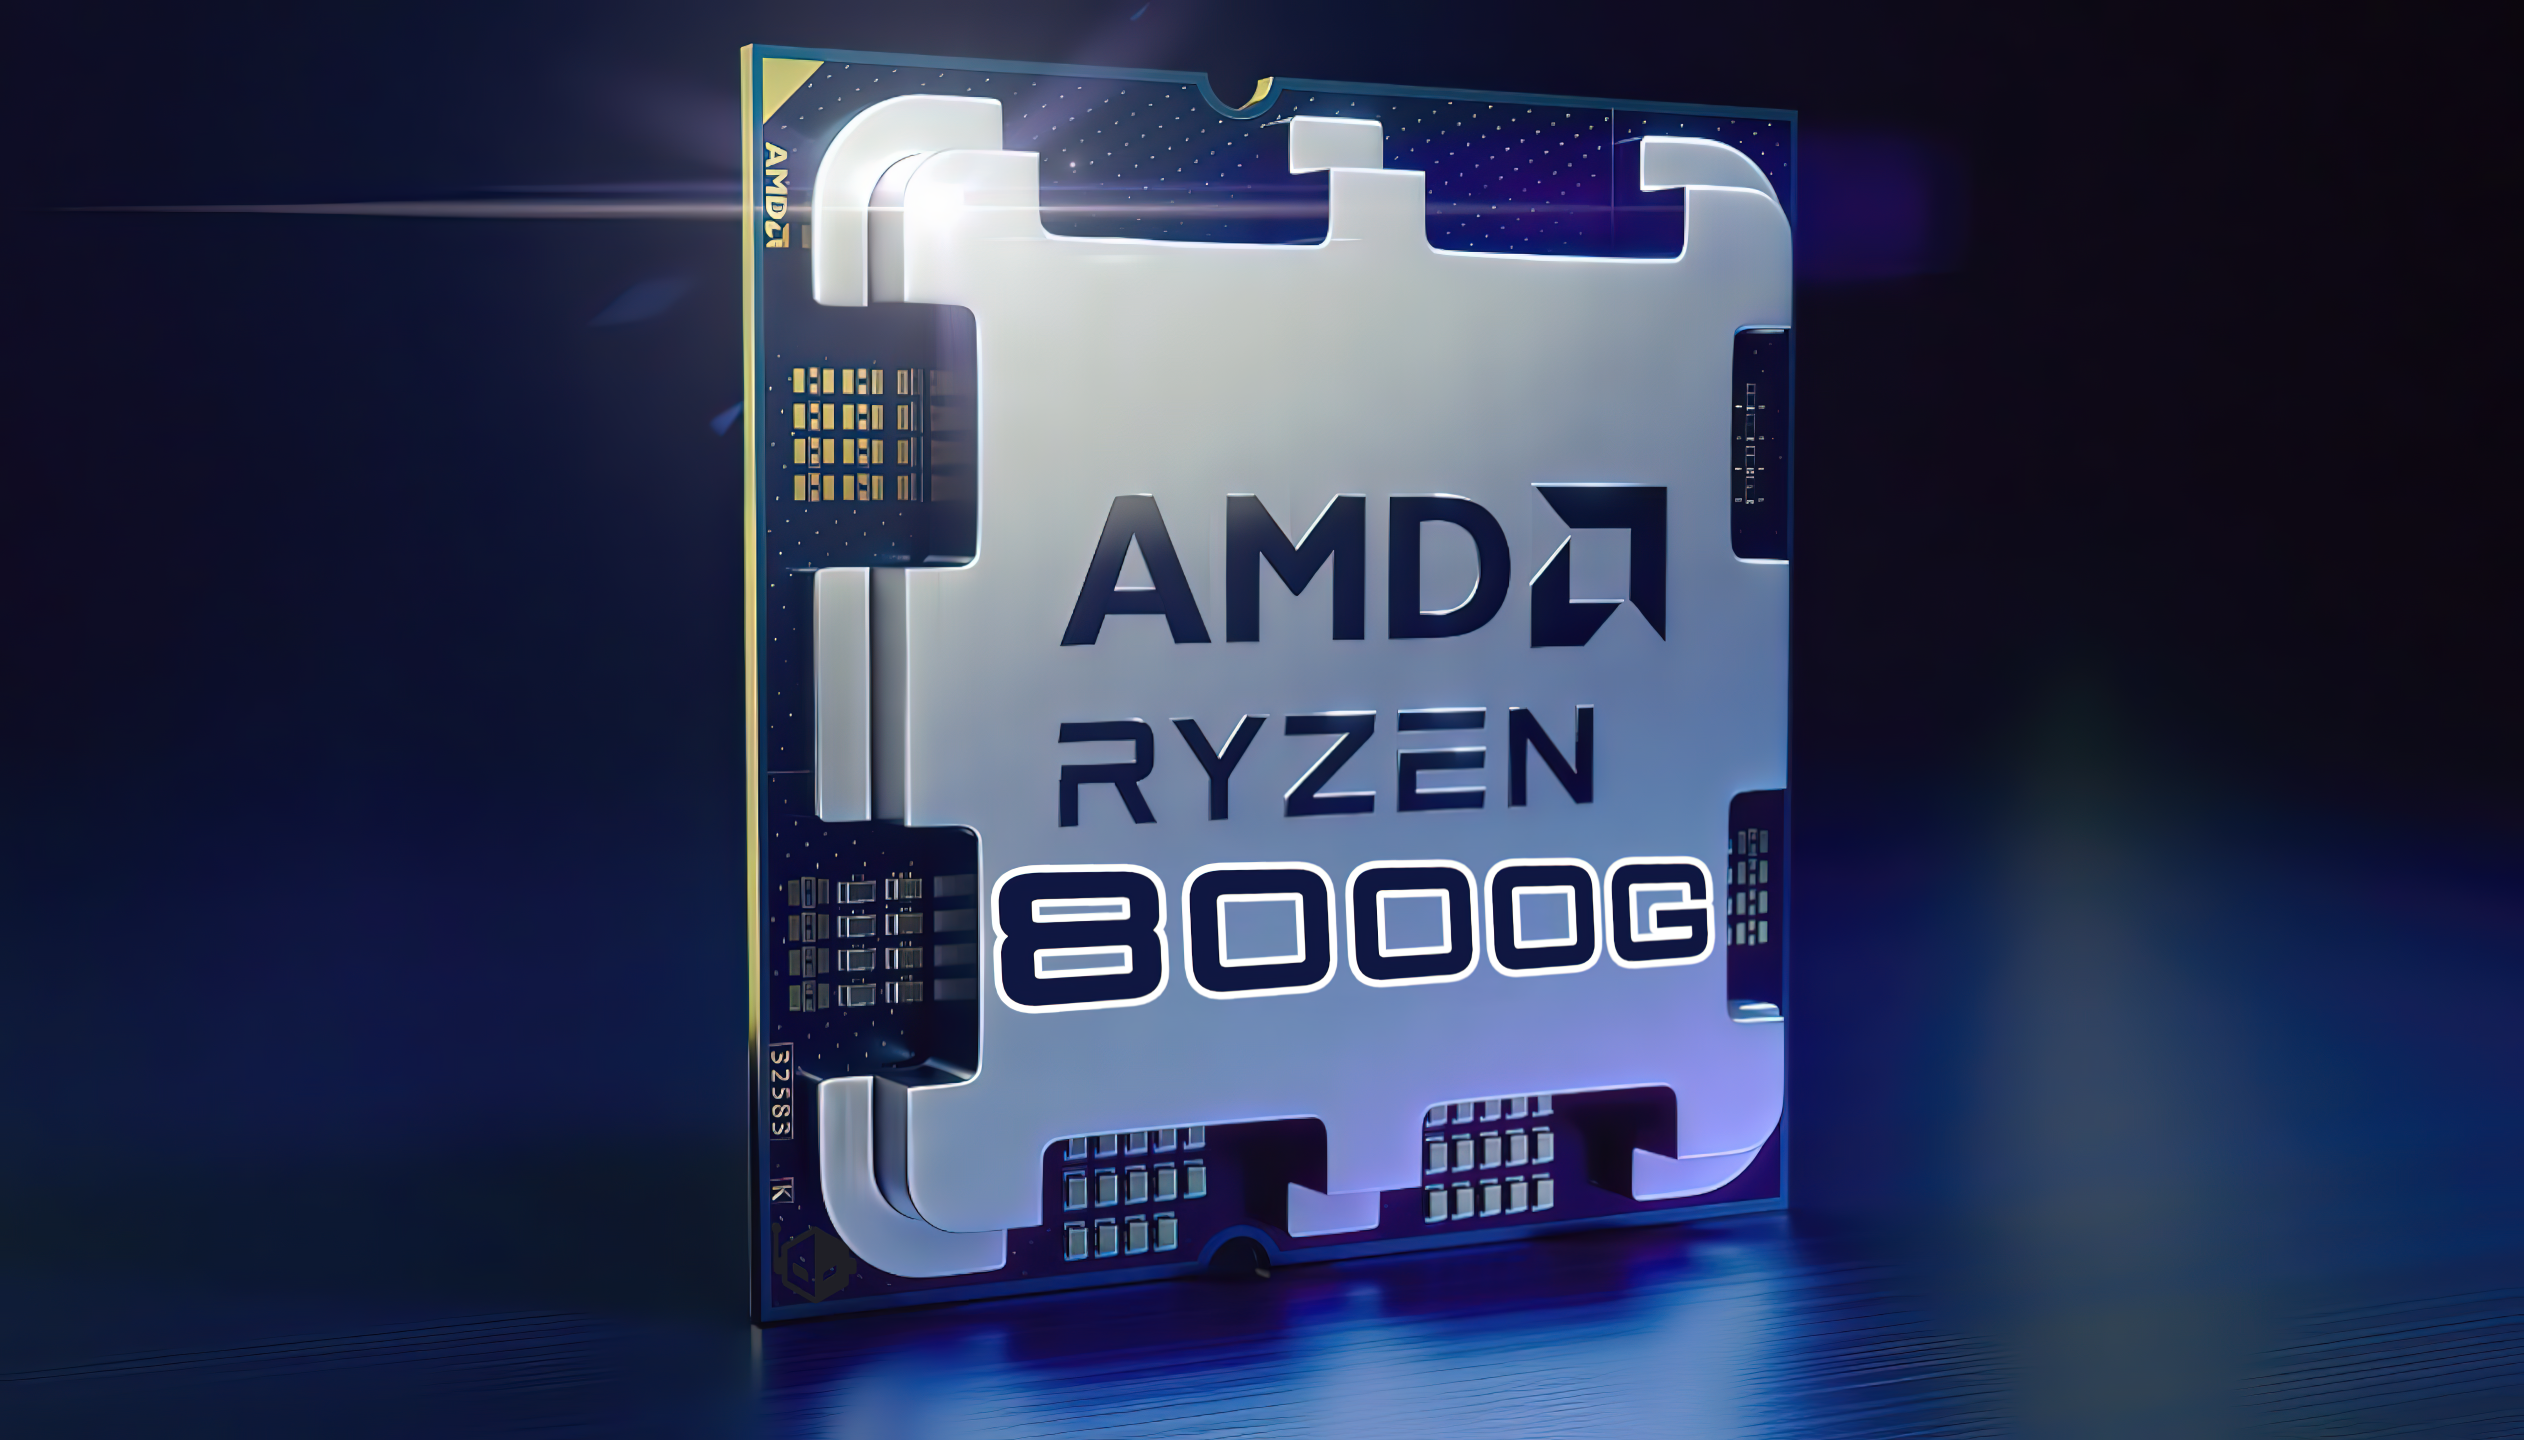 AMD-Ryzen-8000G-Desktop-APU.png